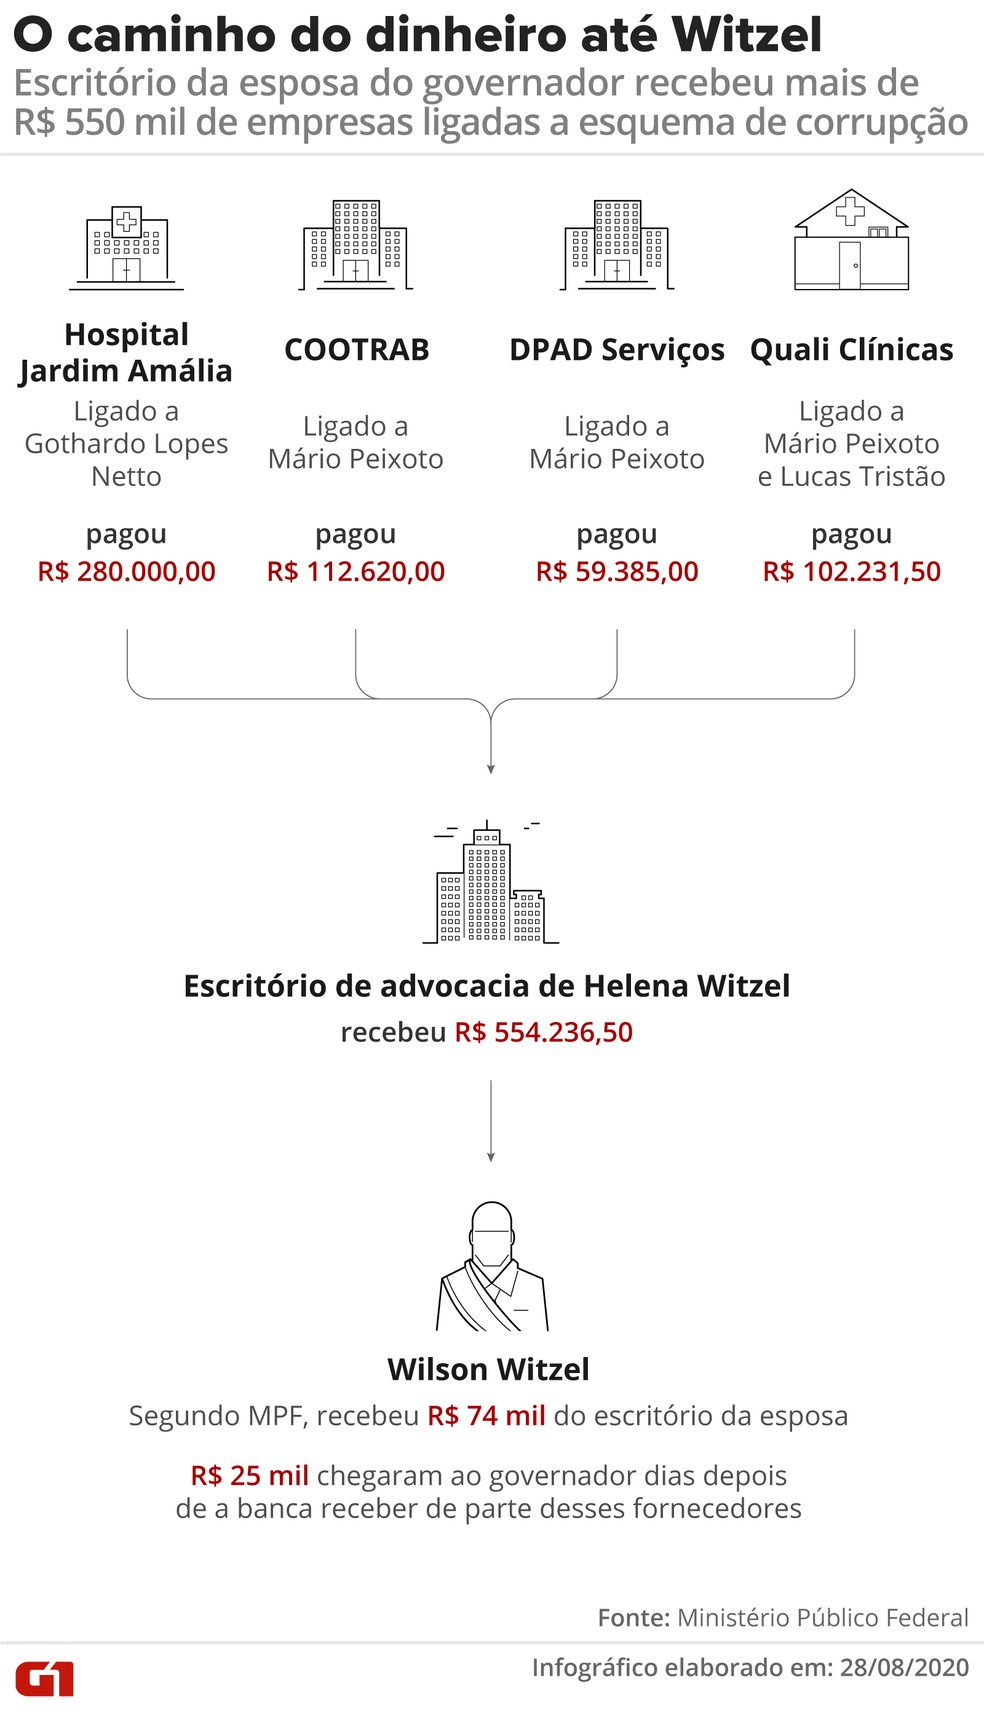 Witzel recebeu R$ 980 mil em dinheiro quando juiz, diz empresário